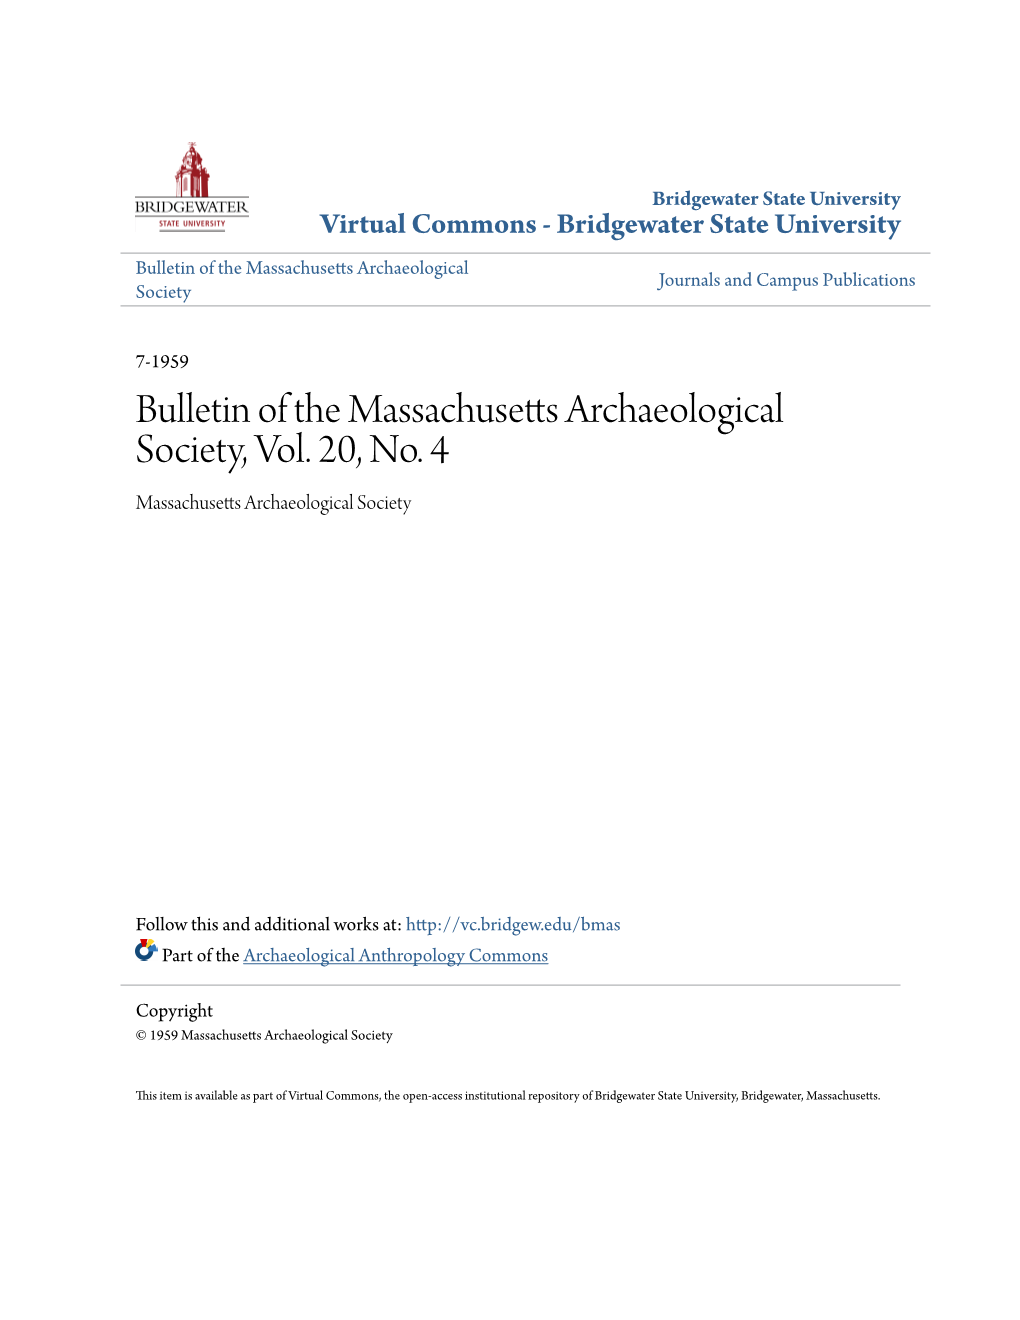 Bulletin of the Massachusetts Archaeological Society, Vol. 20, No. 4 Massachusetts Archaeological Society